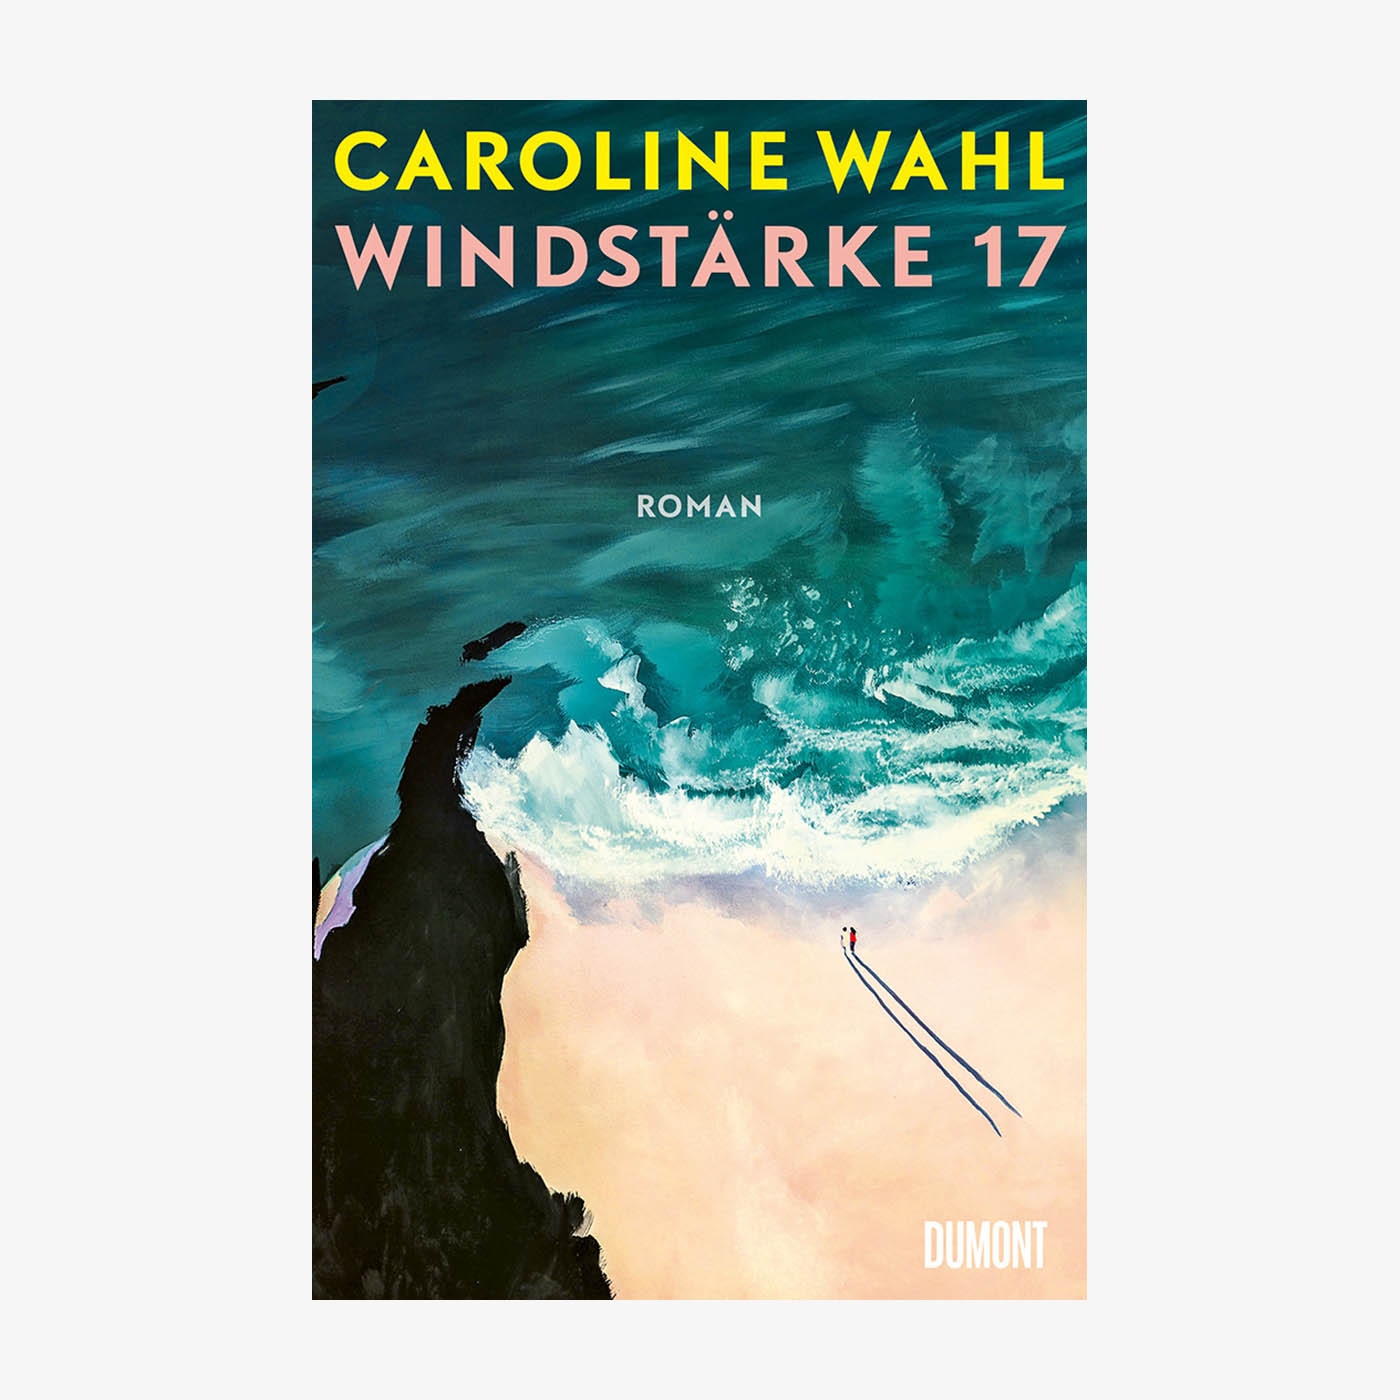 NDR Buch des Monats: "Windstärke 17" von Caroline Wahl